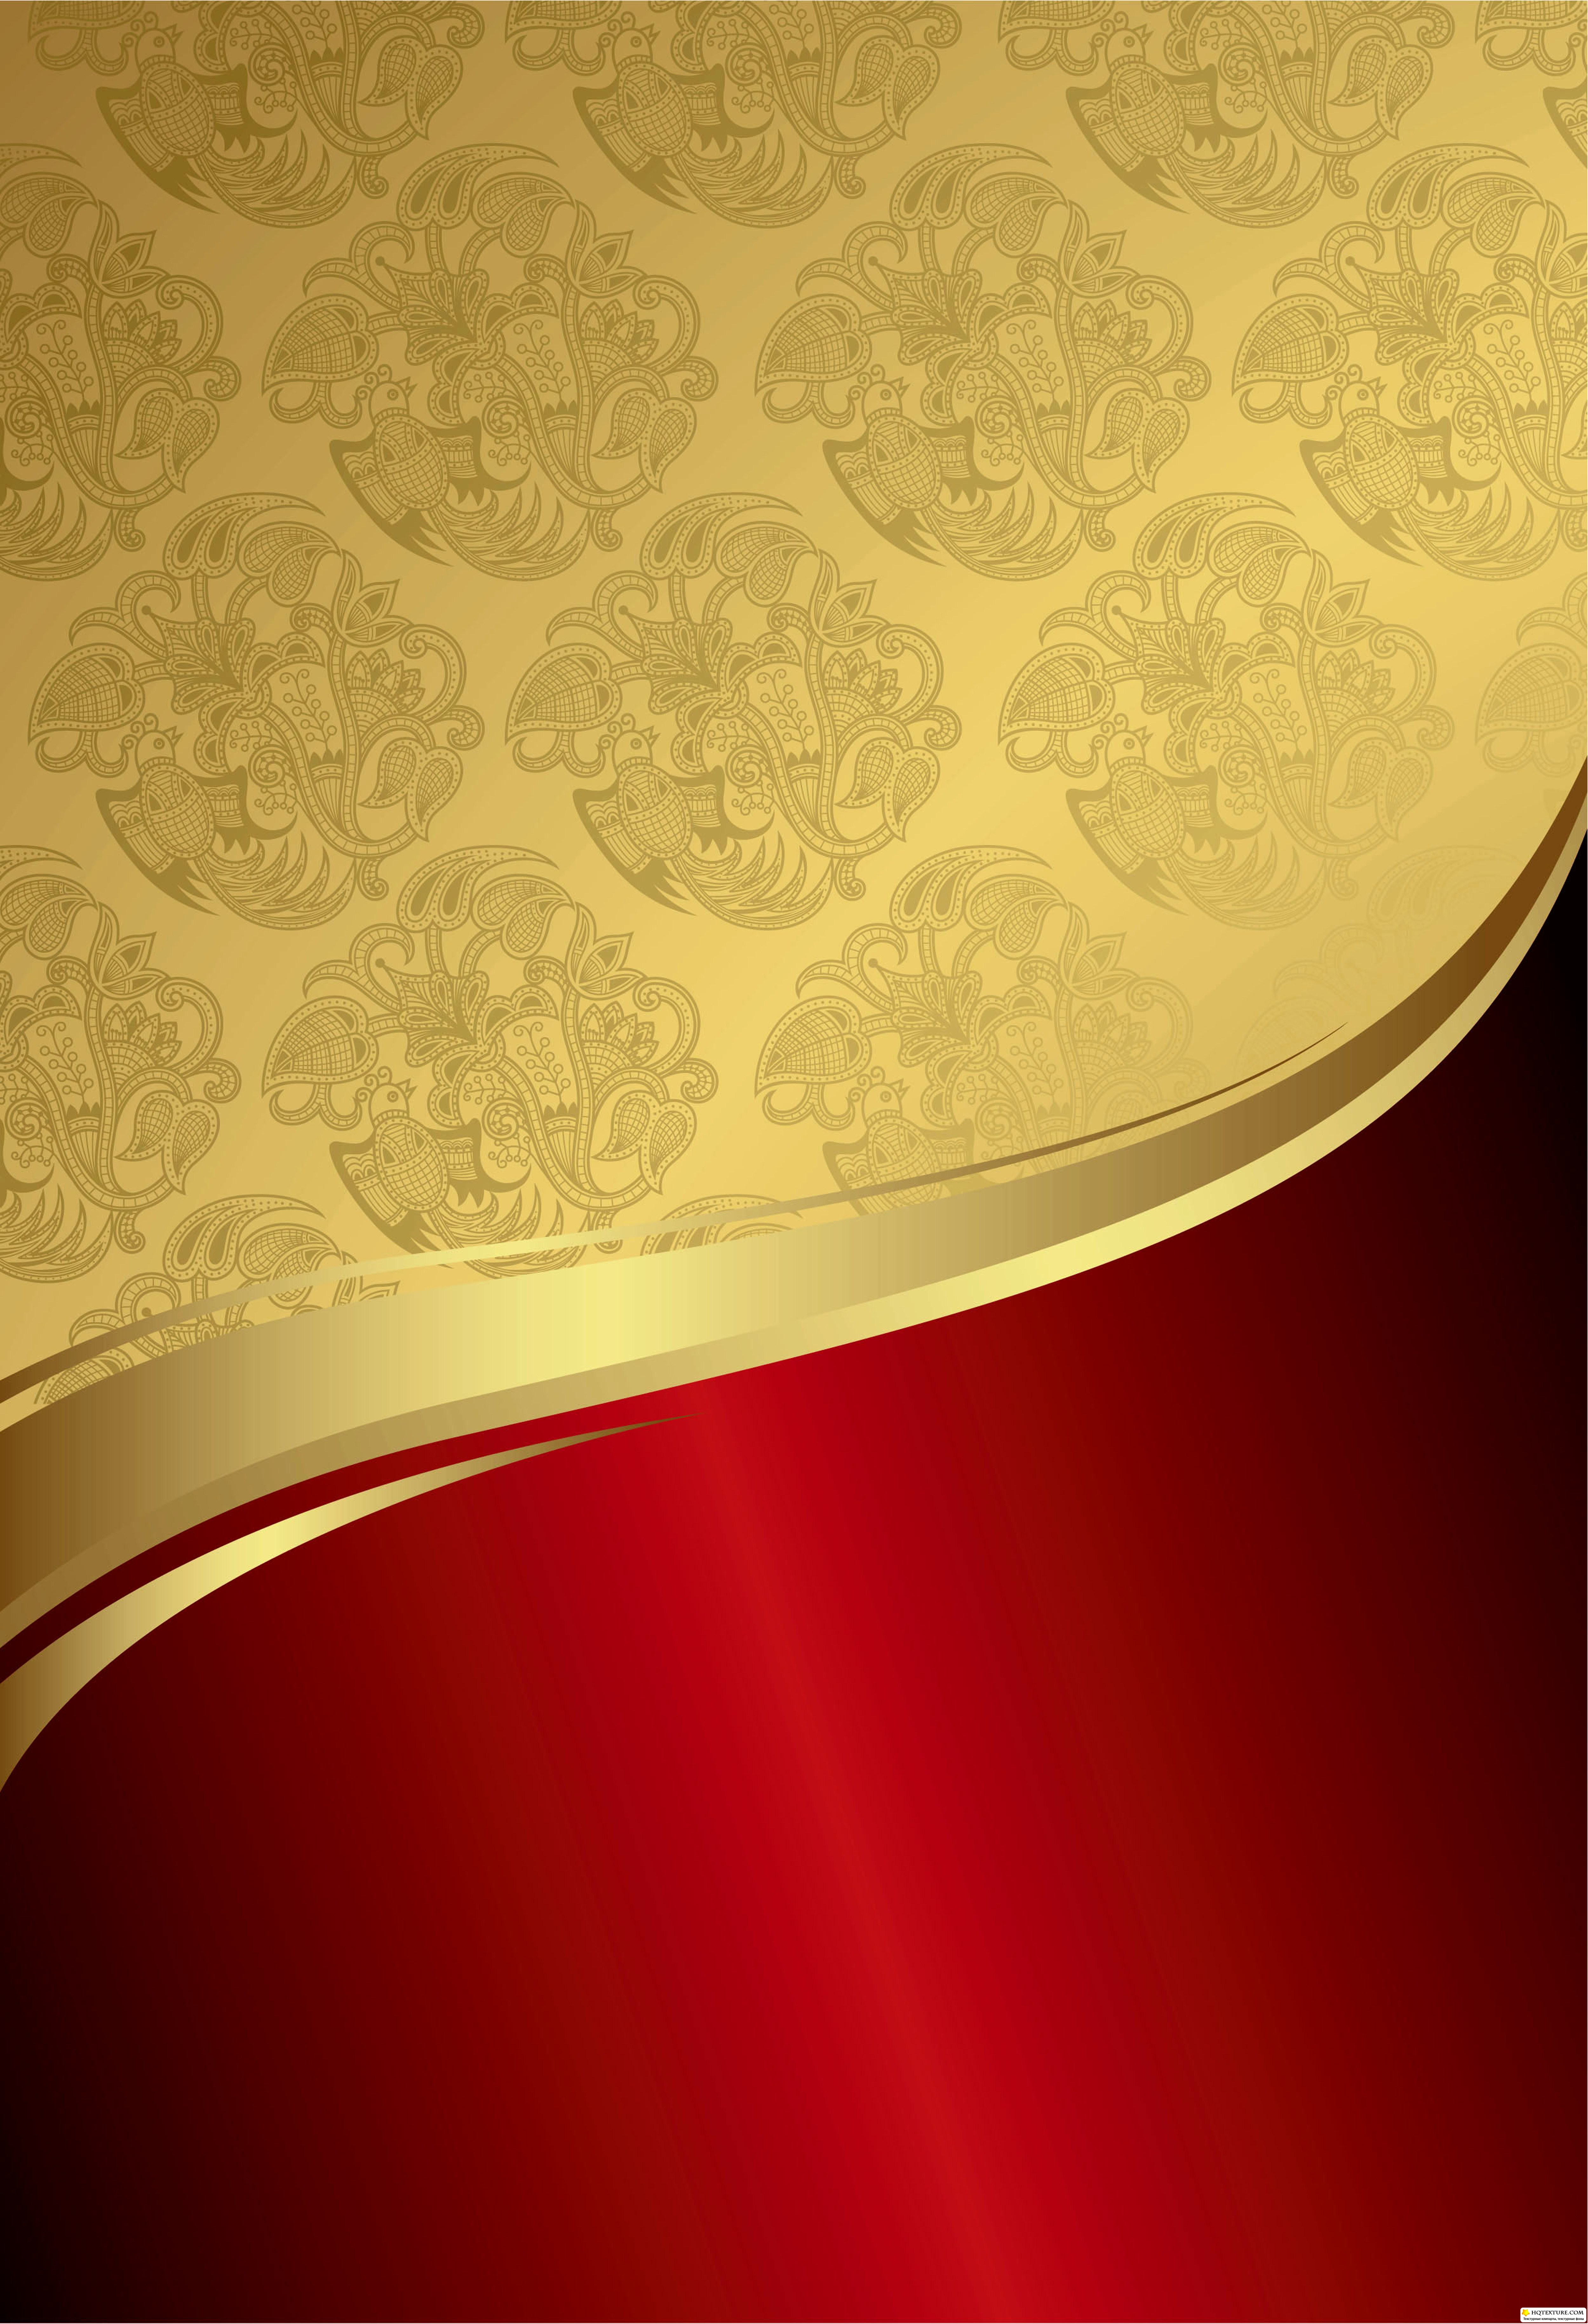 Red and Gold Wallpaper - WallpaperSafari